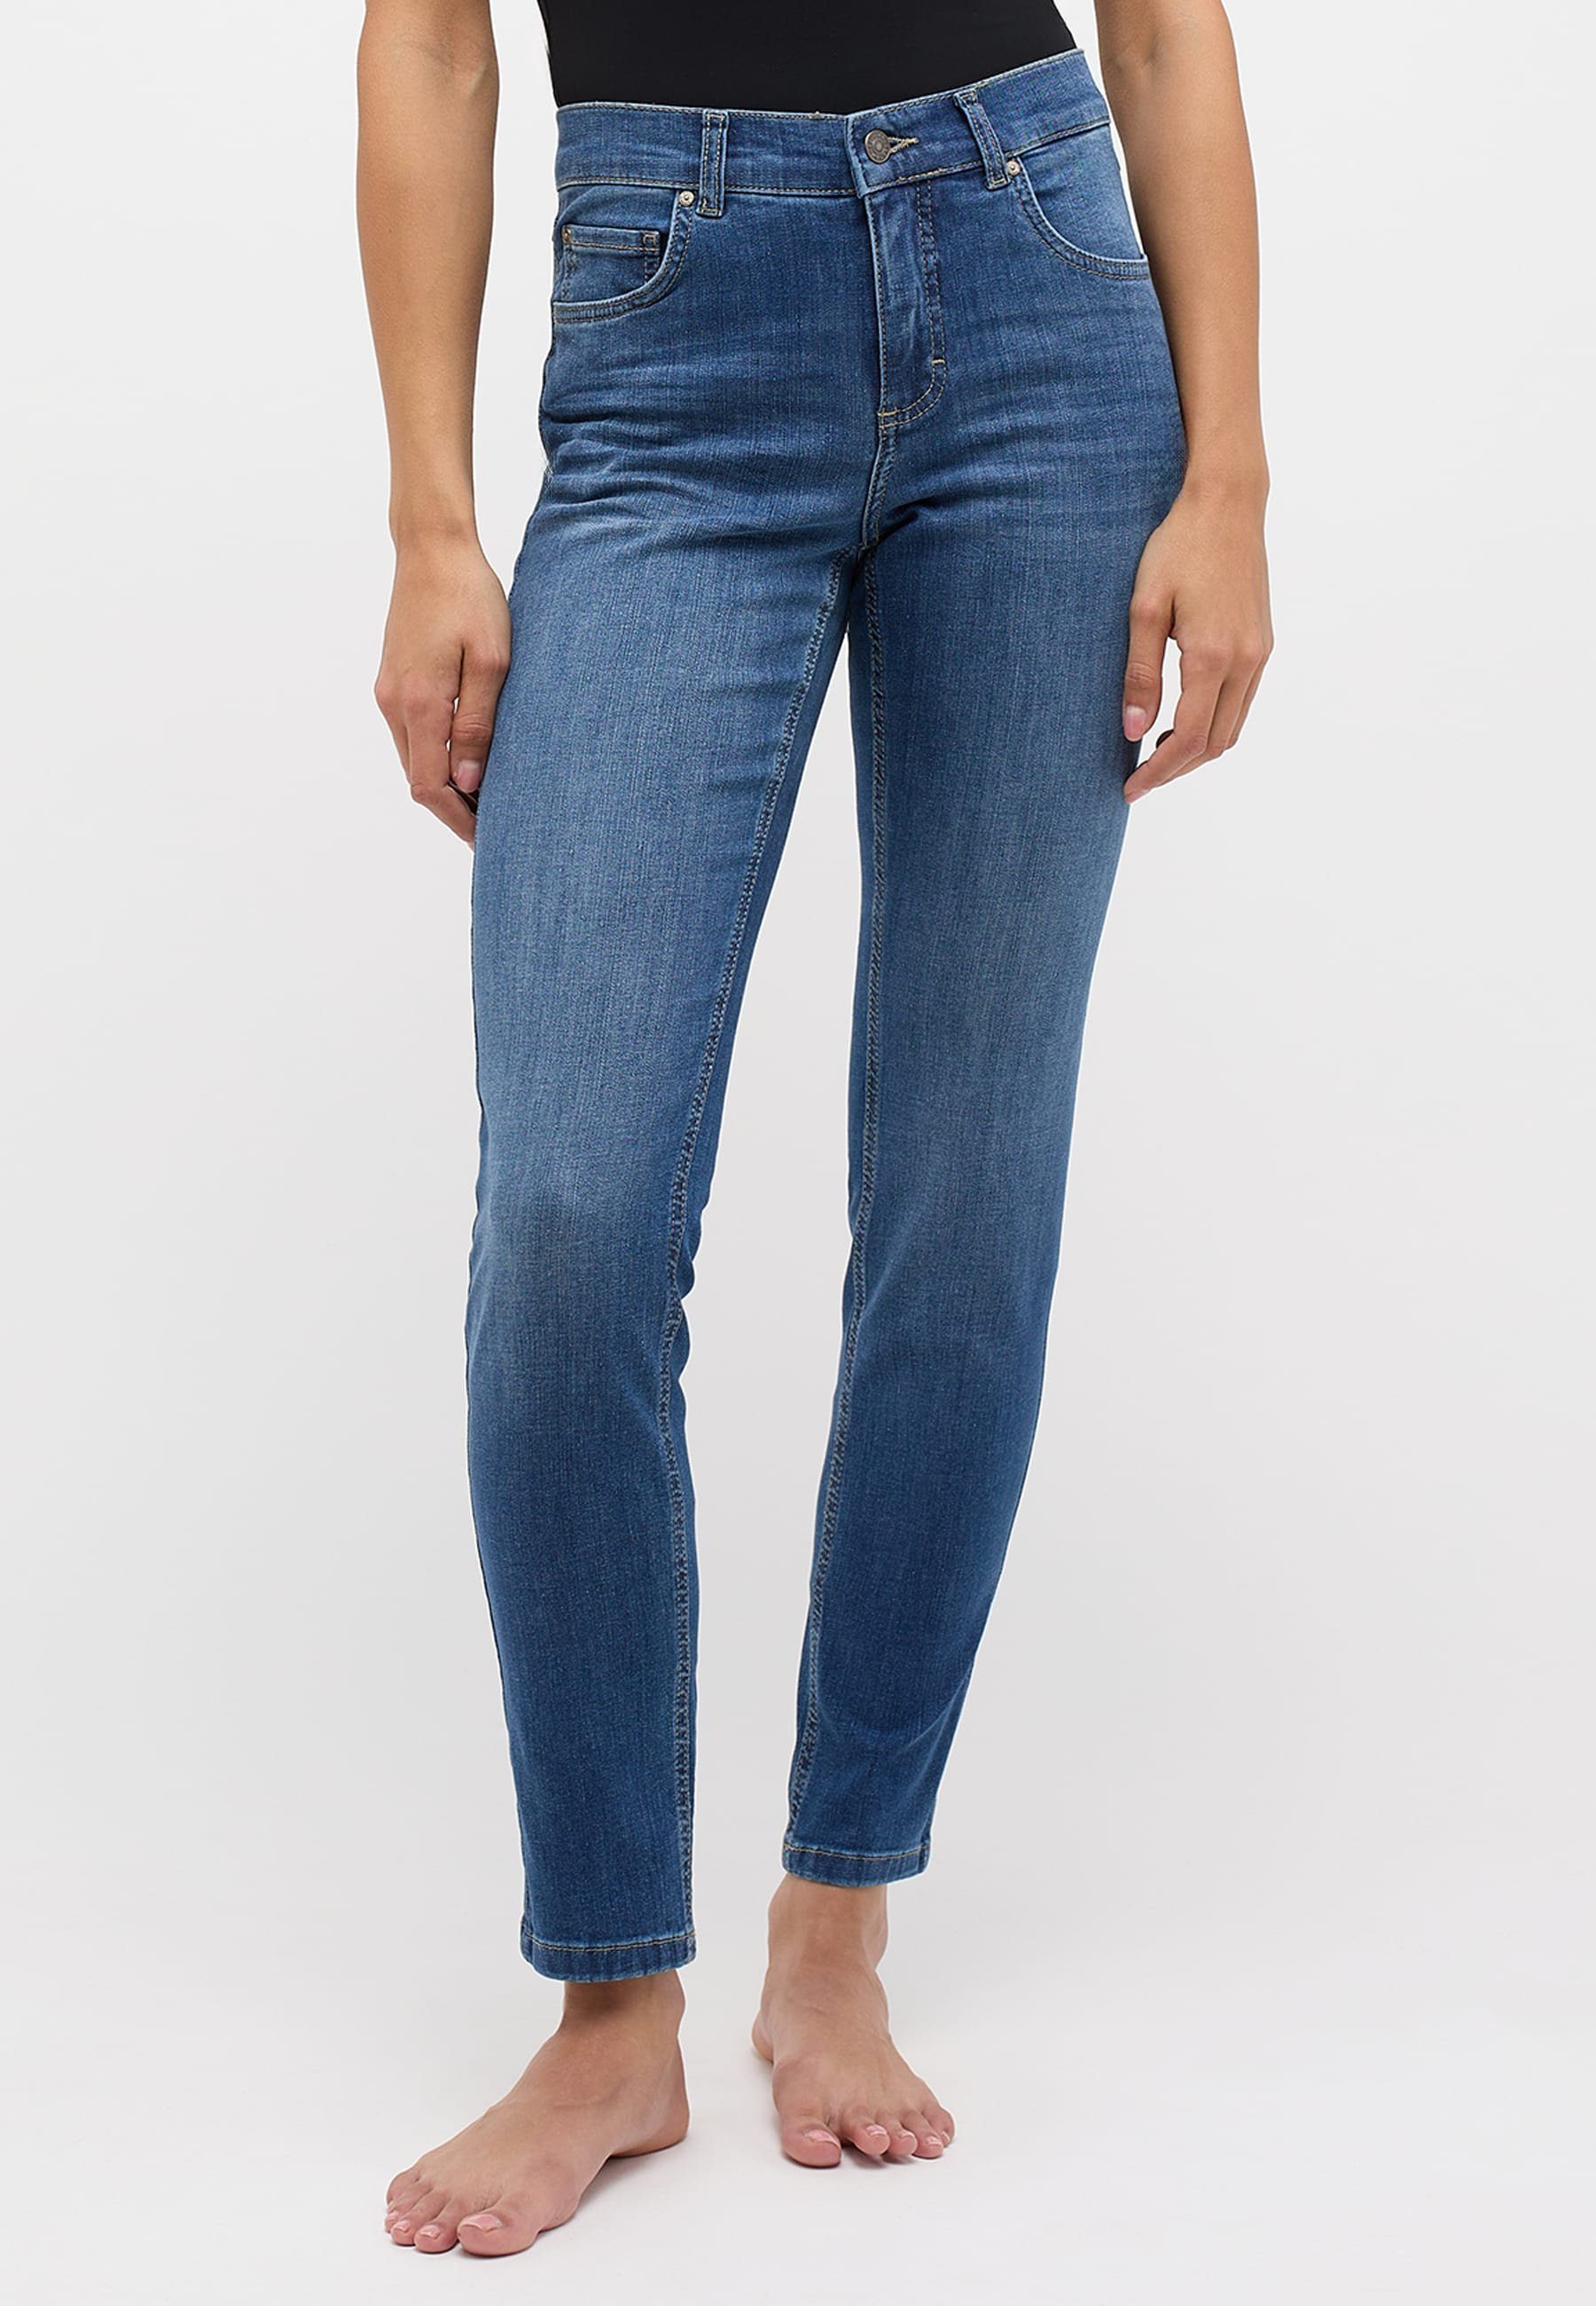 ANGELS Slim-fit-Jeans Denim Jeans authentischem blau Skinny Label-Applikationen mit mit